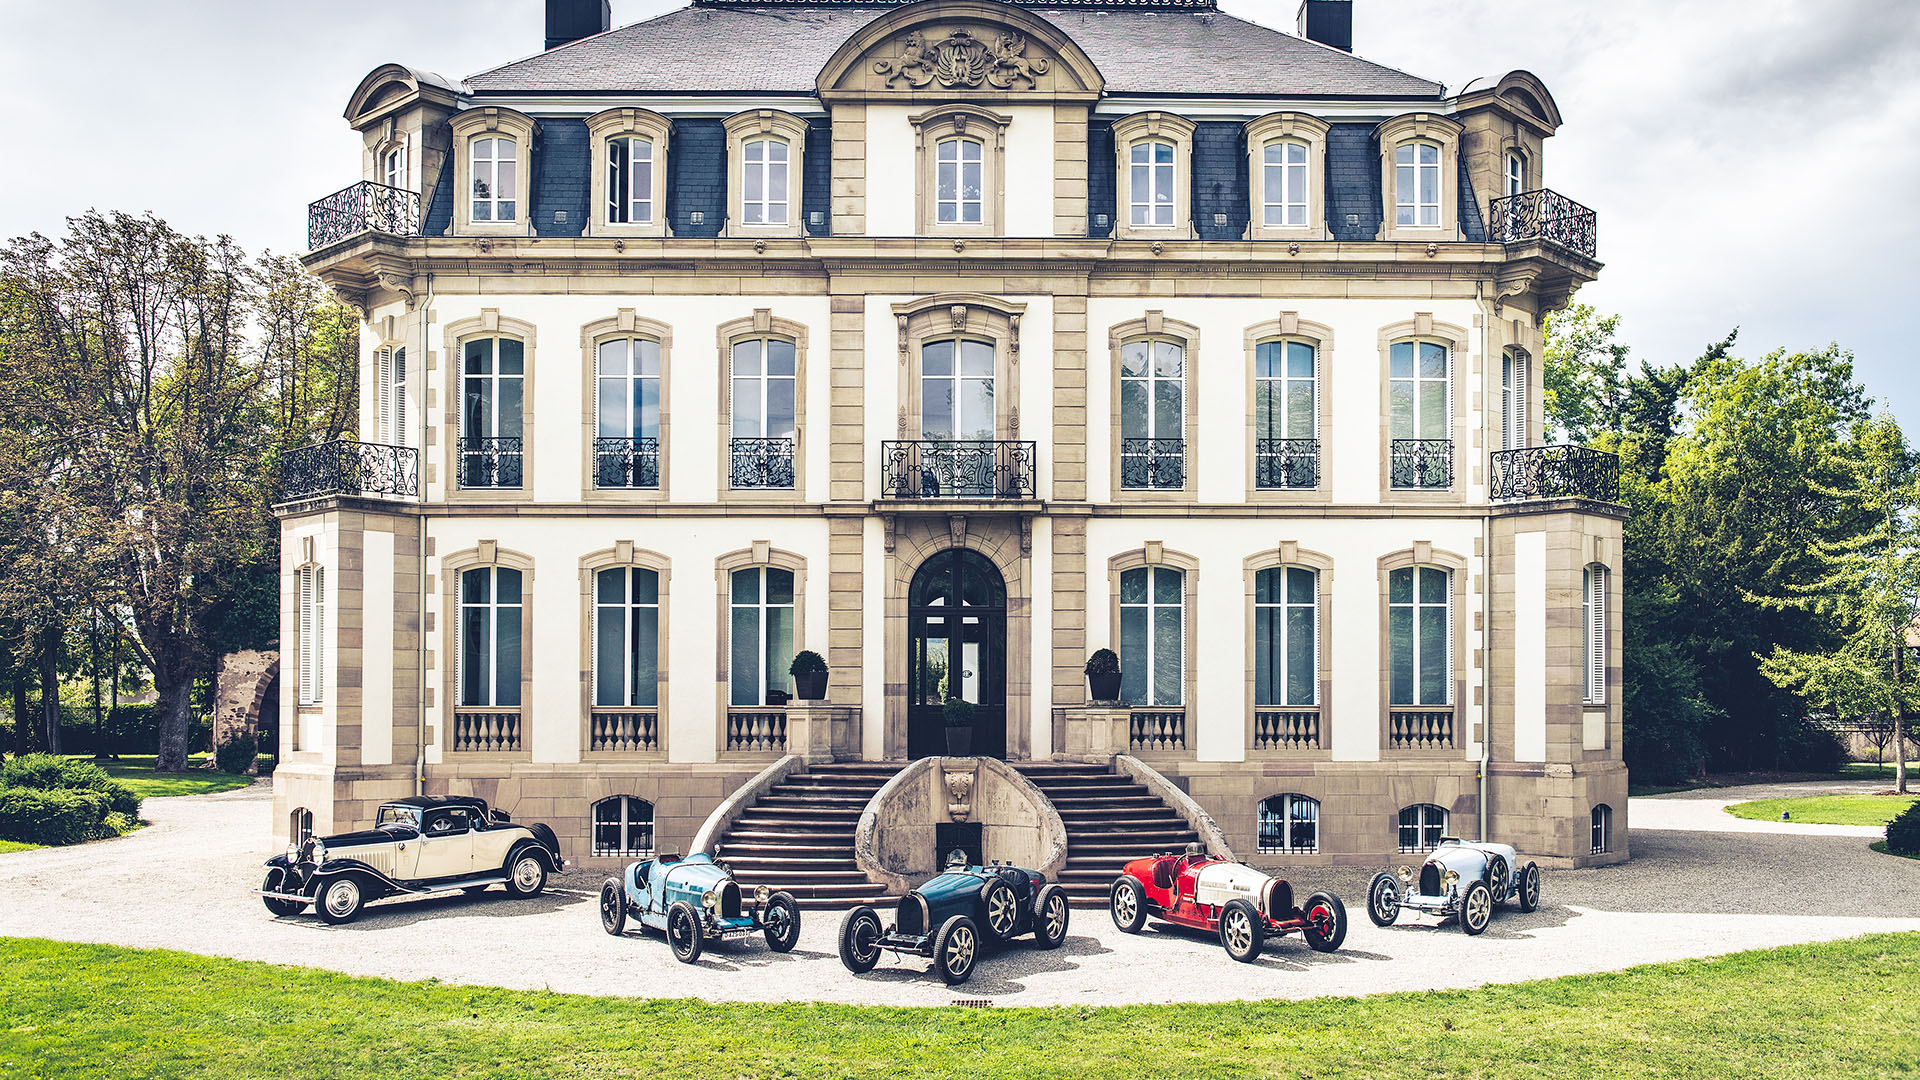 Unique pieces of history home Bugatti finally